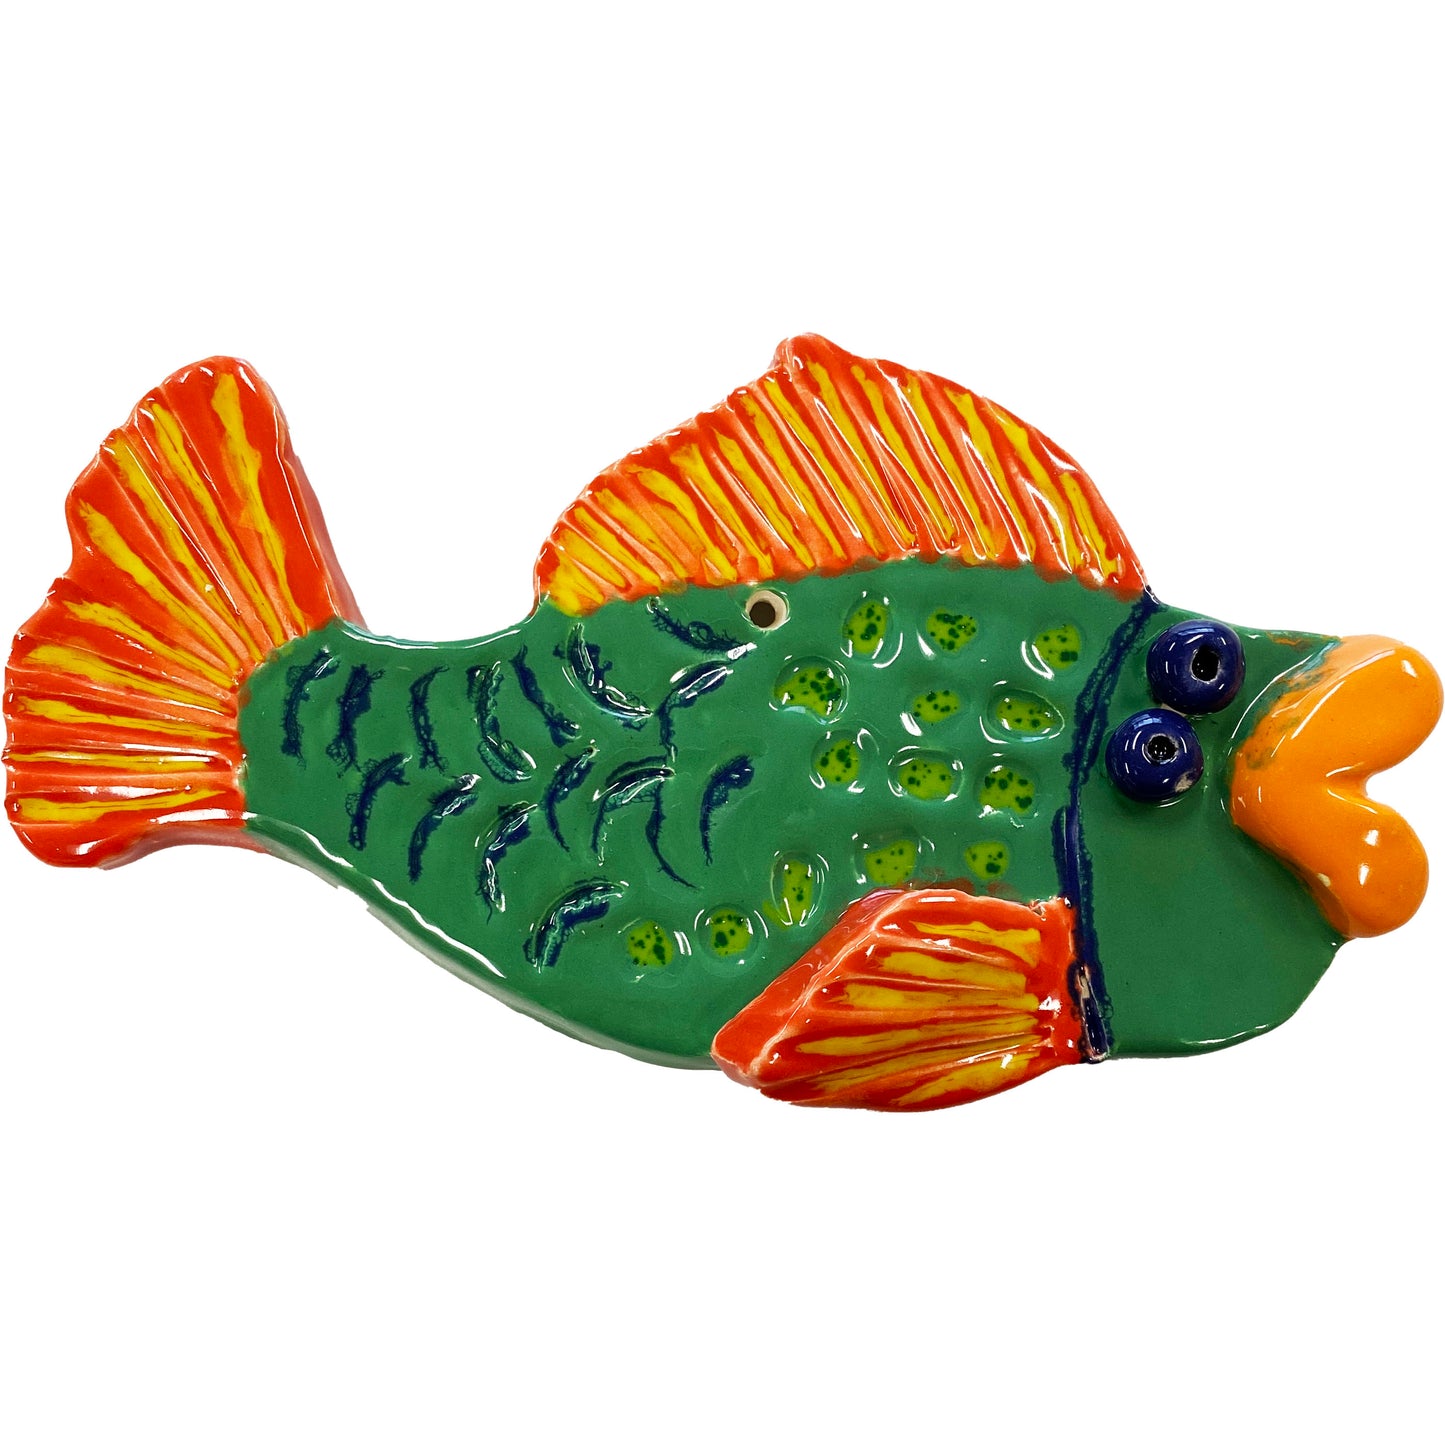 Ceramic Arts Handmade Clay Crafts Fresh Fish Glazed 7.5-inch x 4-inch by Ryan Imhoff